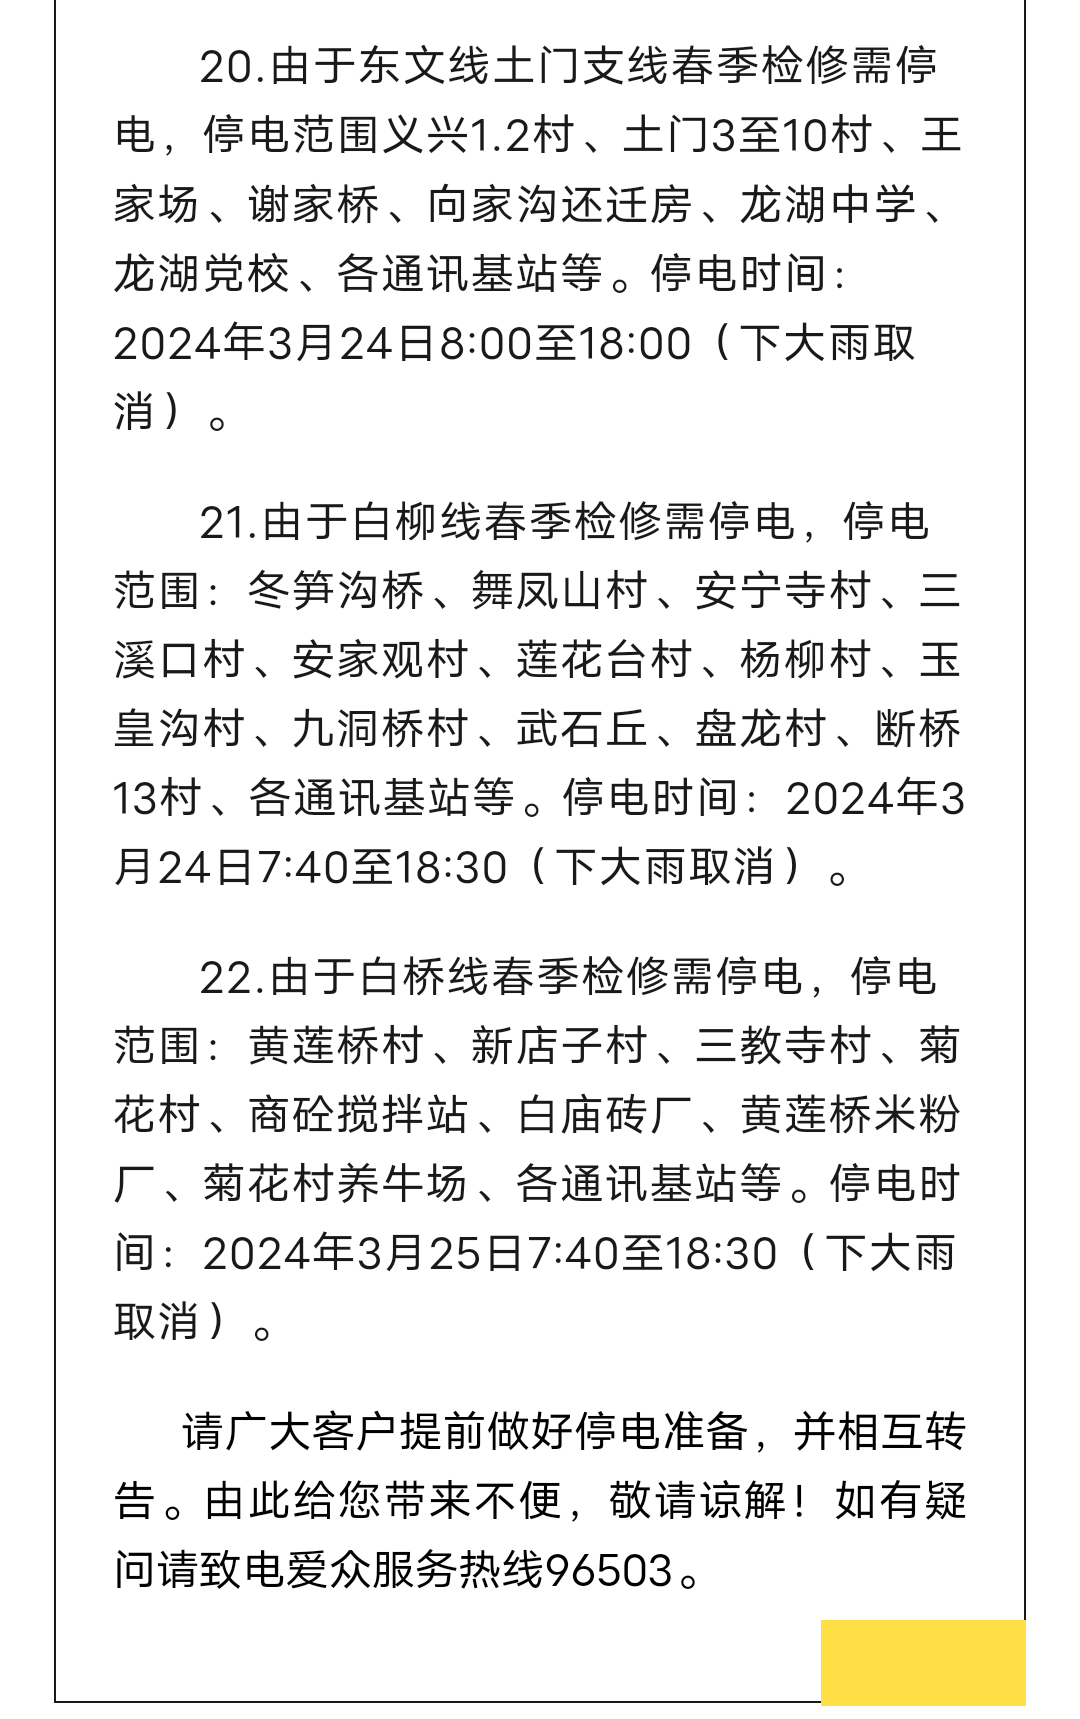 岳池县2024年3月23日至25日供电信息